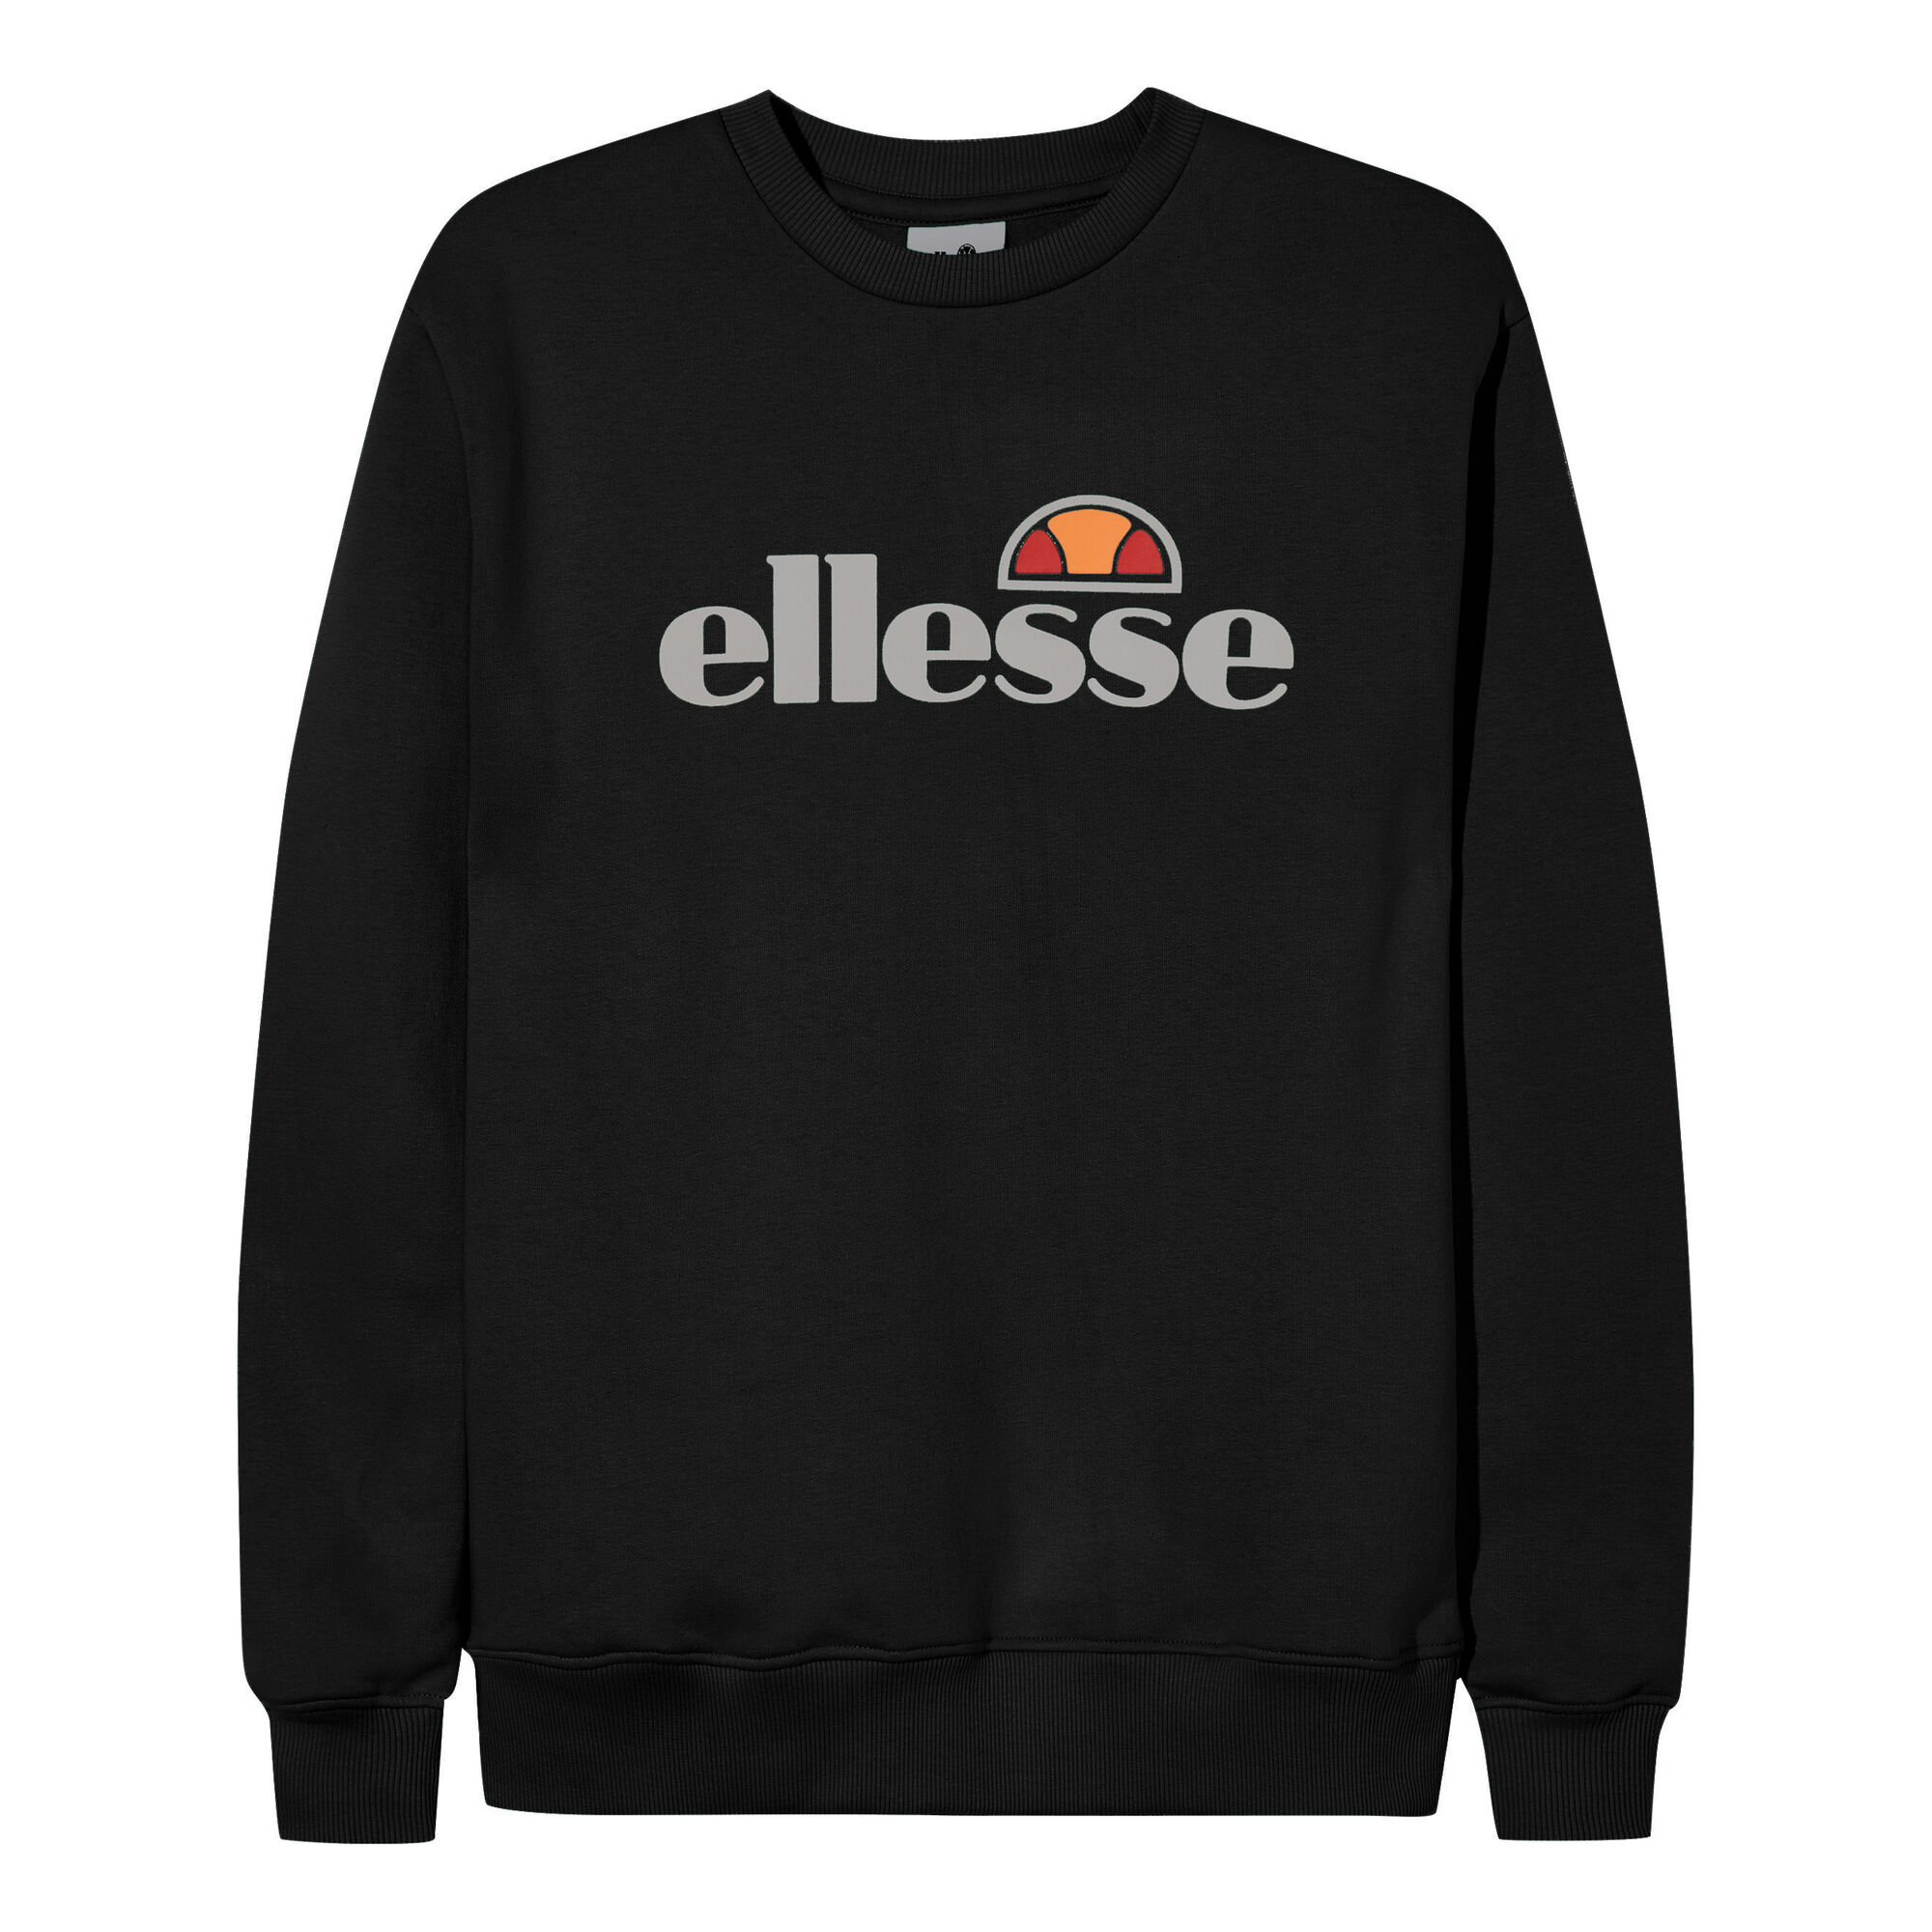 buy Ellesse Tofaro Sweatshirt Women - Black, Silver online | Tennis-Point